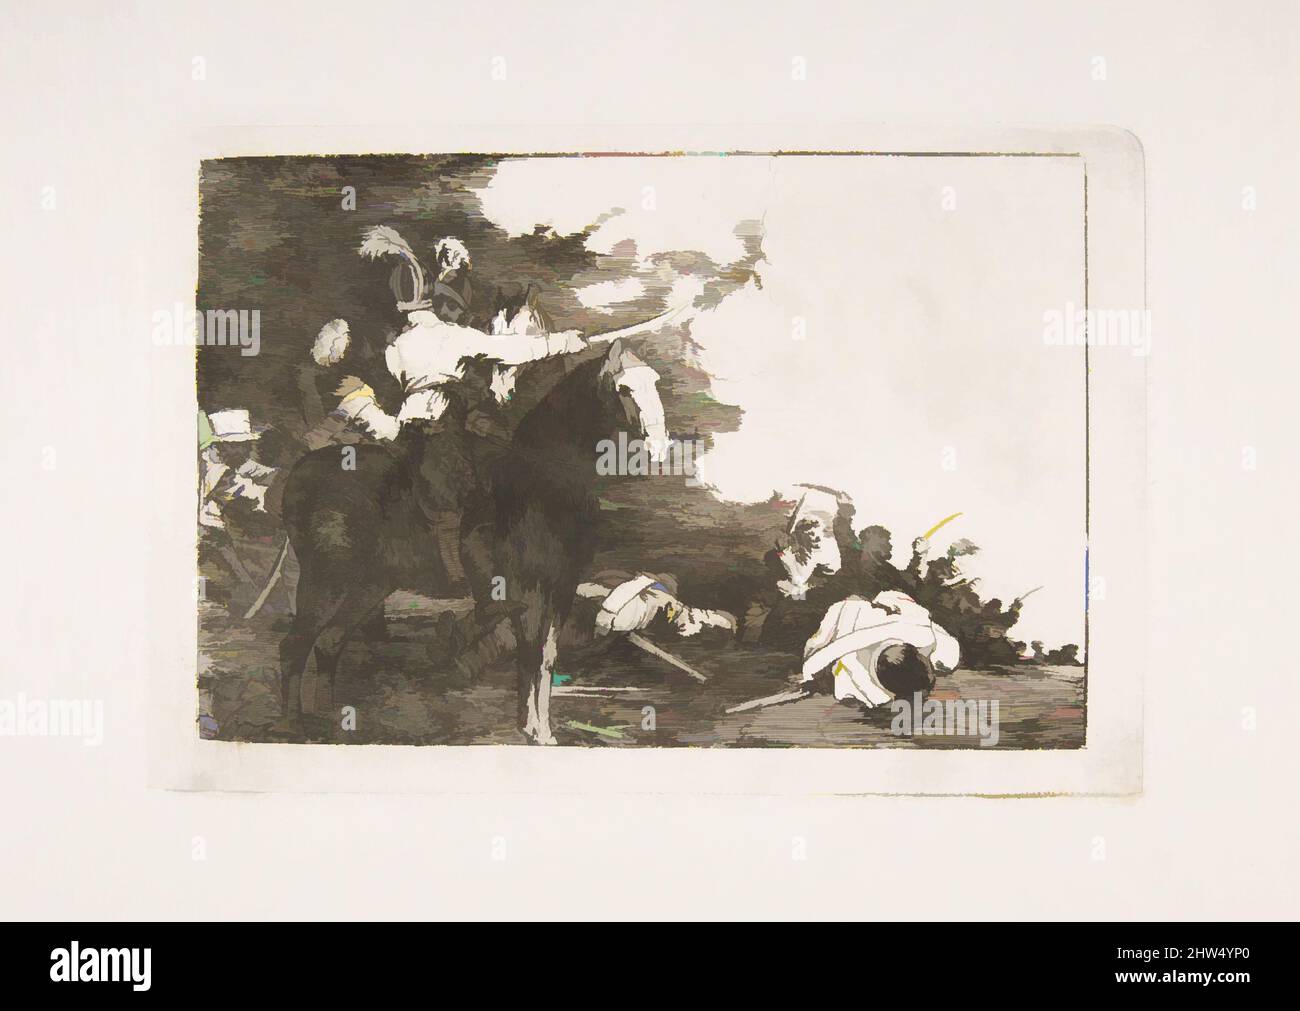 Art inspiré par la planche 17 de 'les désastres de la guerre' (Los Desastres de la Guerra): 'Ils ne sont pas d'accord.' (Non pratique), 1810, décapage, point sec, burin, Et burnisher, plaque : 5 11/16 × 8 7/16 in. (14,4 × 21,5 cm), Prints, Goya (Francisco de Goya y Lucientes) (Espagnol, Fuendetodos, oeuvres classiques modernisées par Artotop avec une touche de modernité. Formes, couleur et valeur, impact visuel accrocheur sur l'art émotions par la liberté d'œuvres d'art d'une manière contemporaine. Un message intemporel qui cherche une nouvelle direction créative. Artistes qui se tournent vers le support numérique et créent le NFT Artotop Banque D'Images